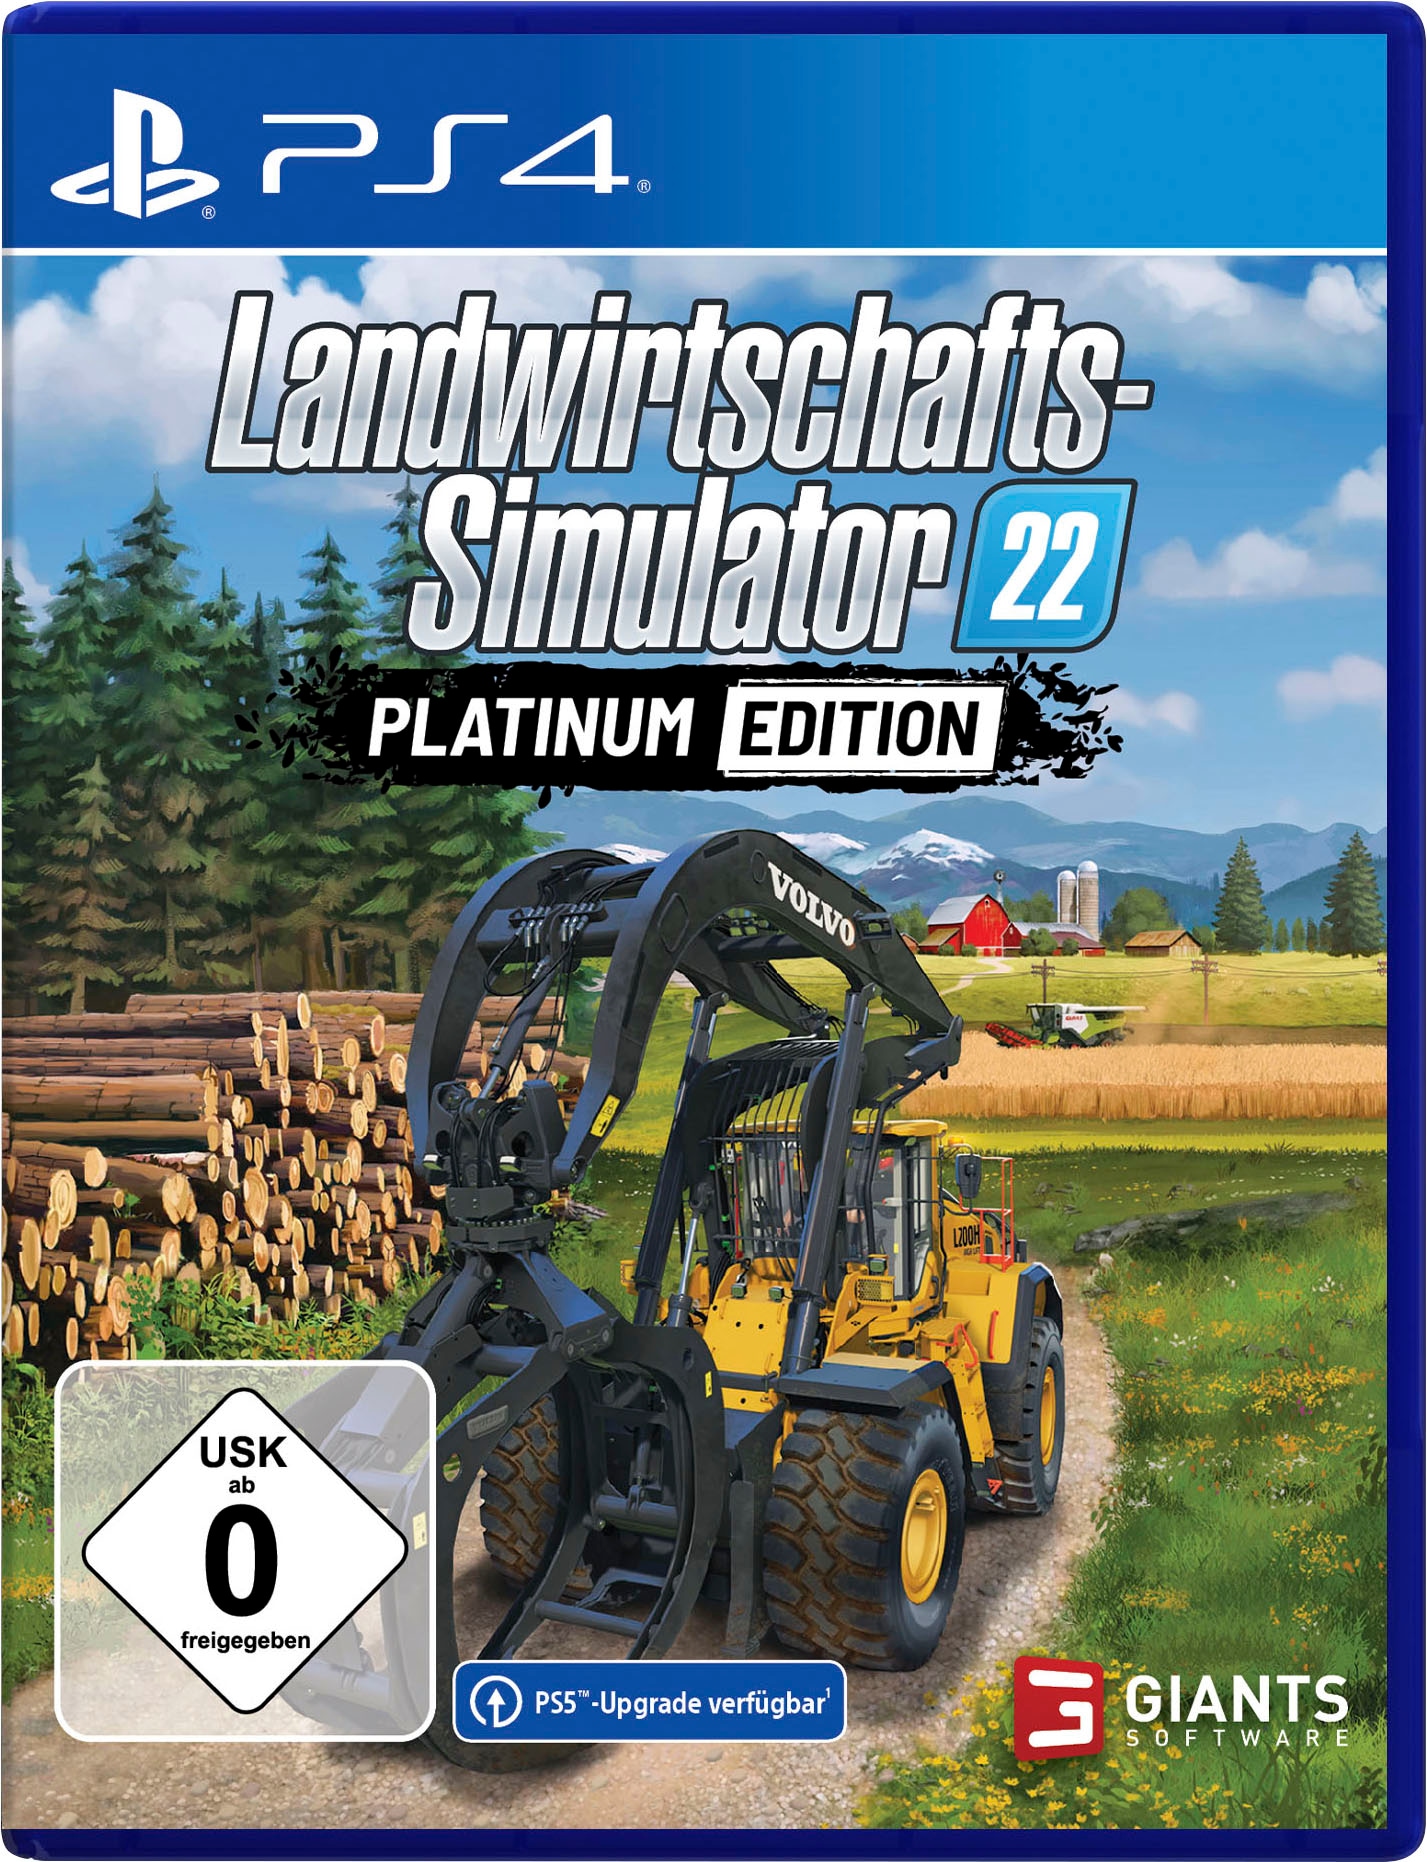 PS5 Landwirtschaftssimulator LS 22 platinum edition